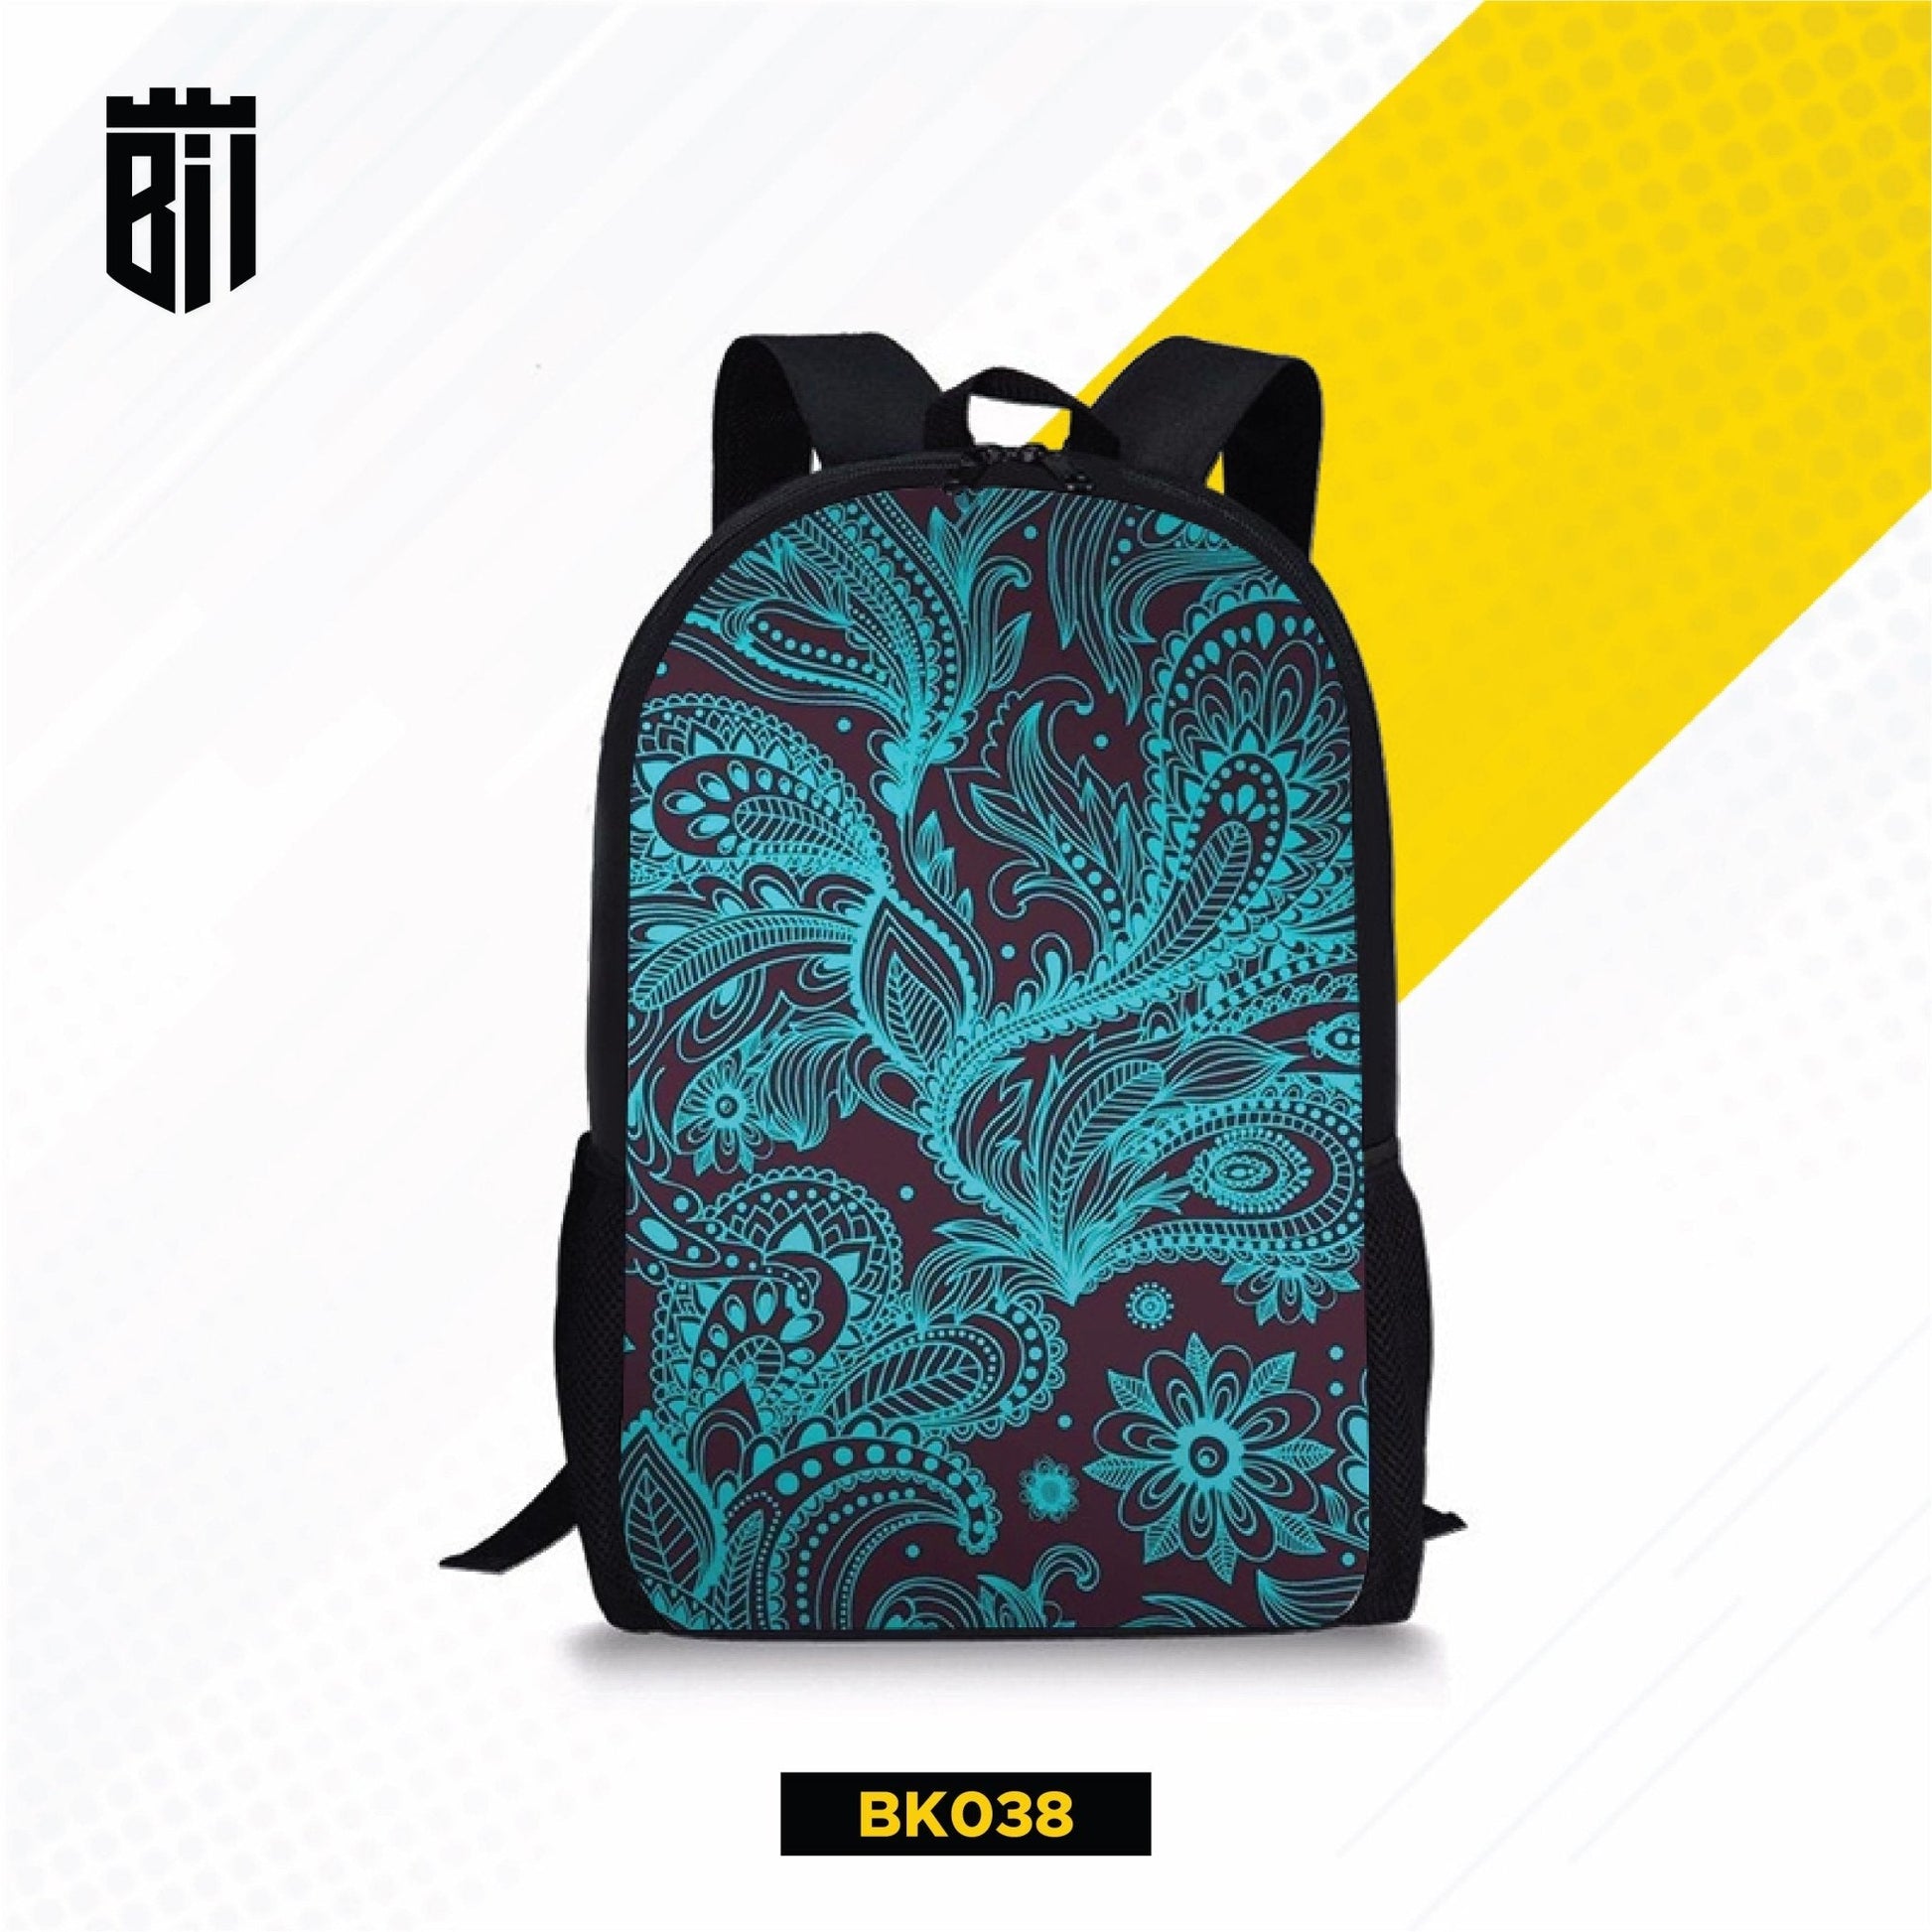 BK038 Blue Aesthetic Backpack - BREACHIT